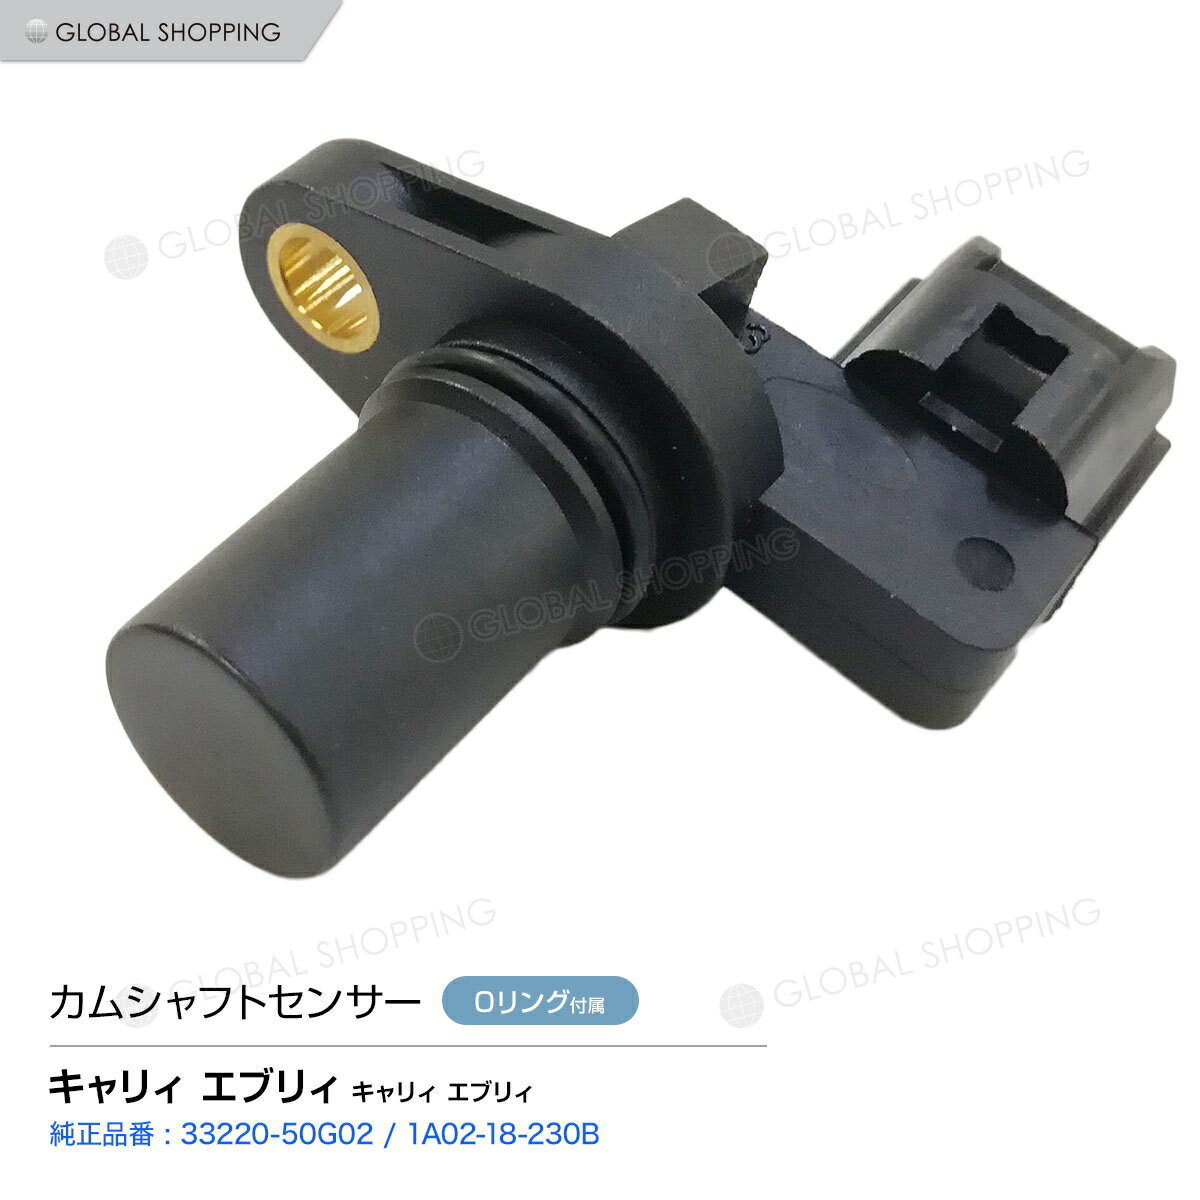 カムポジションセンサー スズキ キャリィ エブリィ(DA52T) カム角センサー/カムシャフトセンサー 33220-50G02